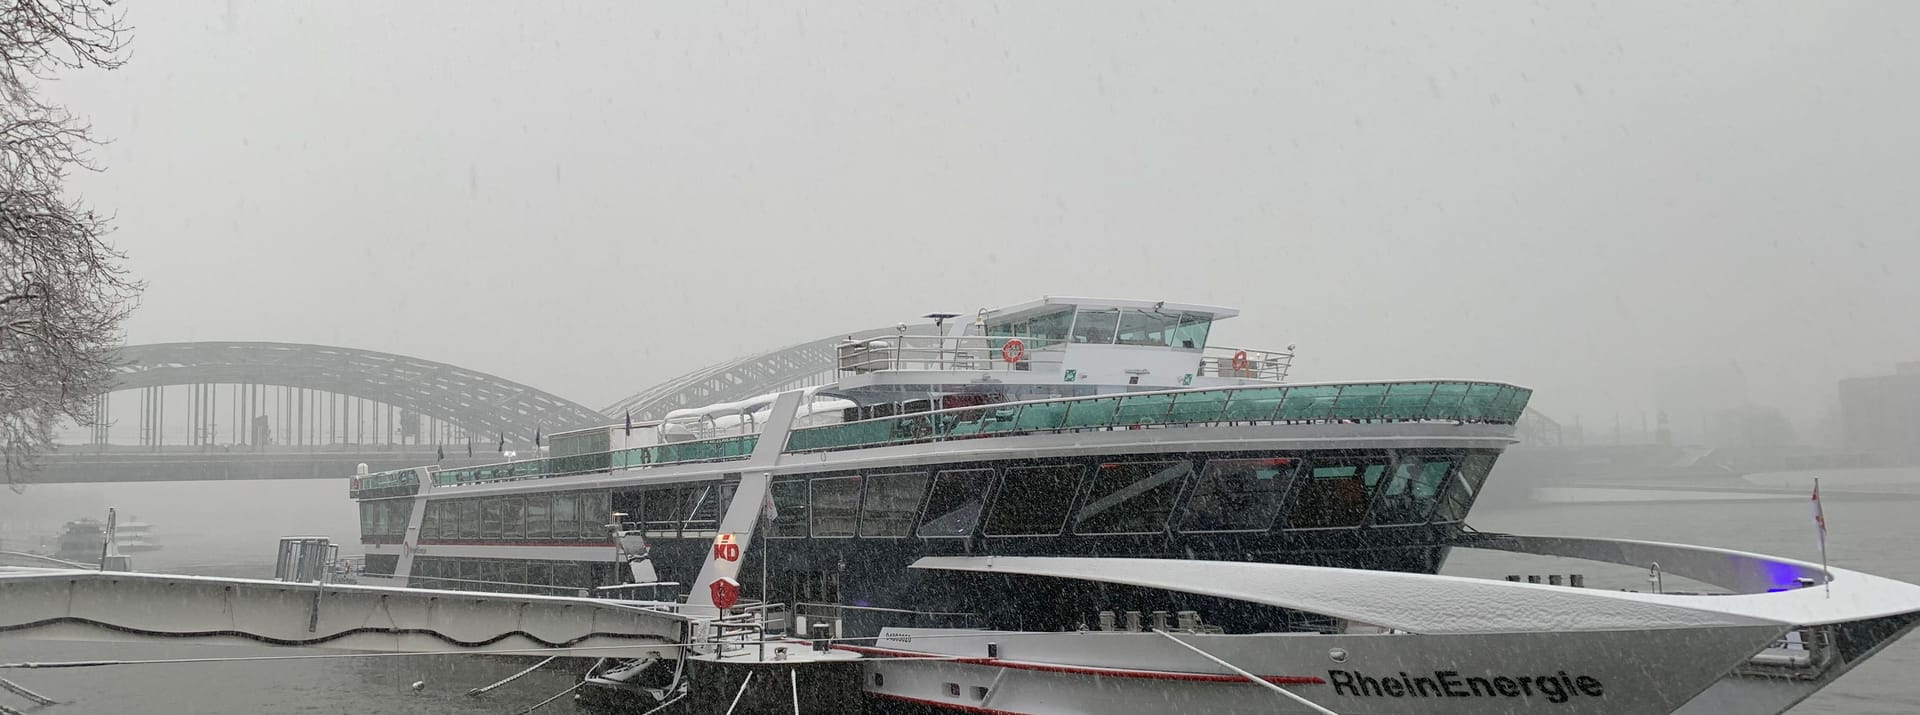 Das Eventschiff "MS RheinEnergie". Zwar ist der Rhein ist nicht zugefroren, das Schiff liegt aber im Schneegestöber.